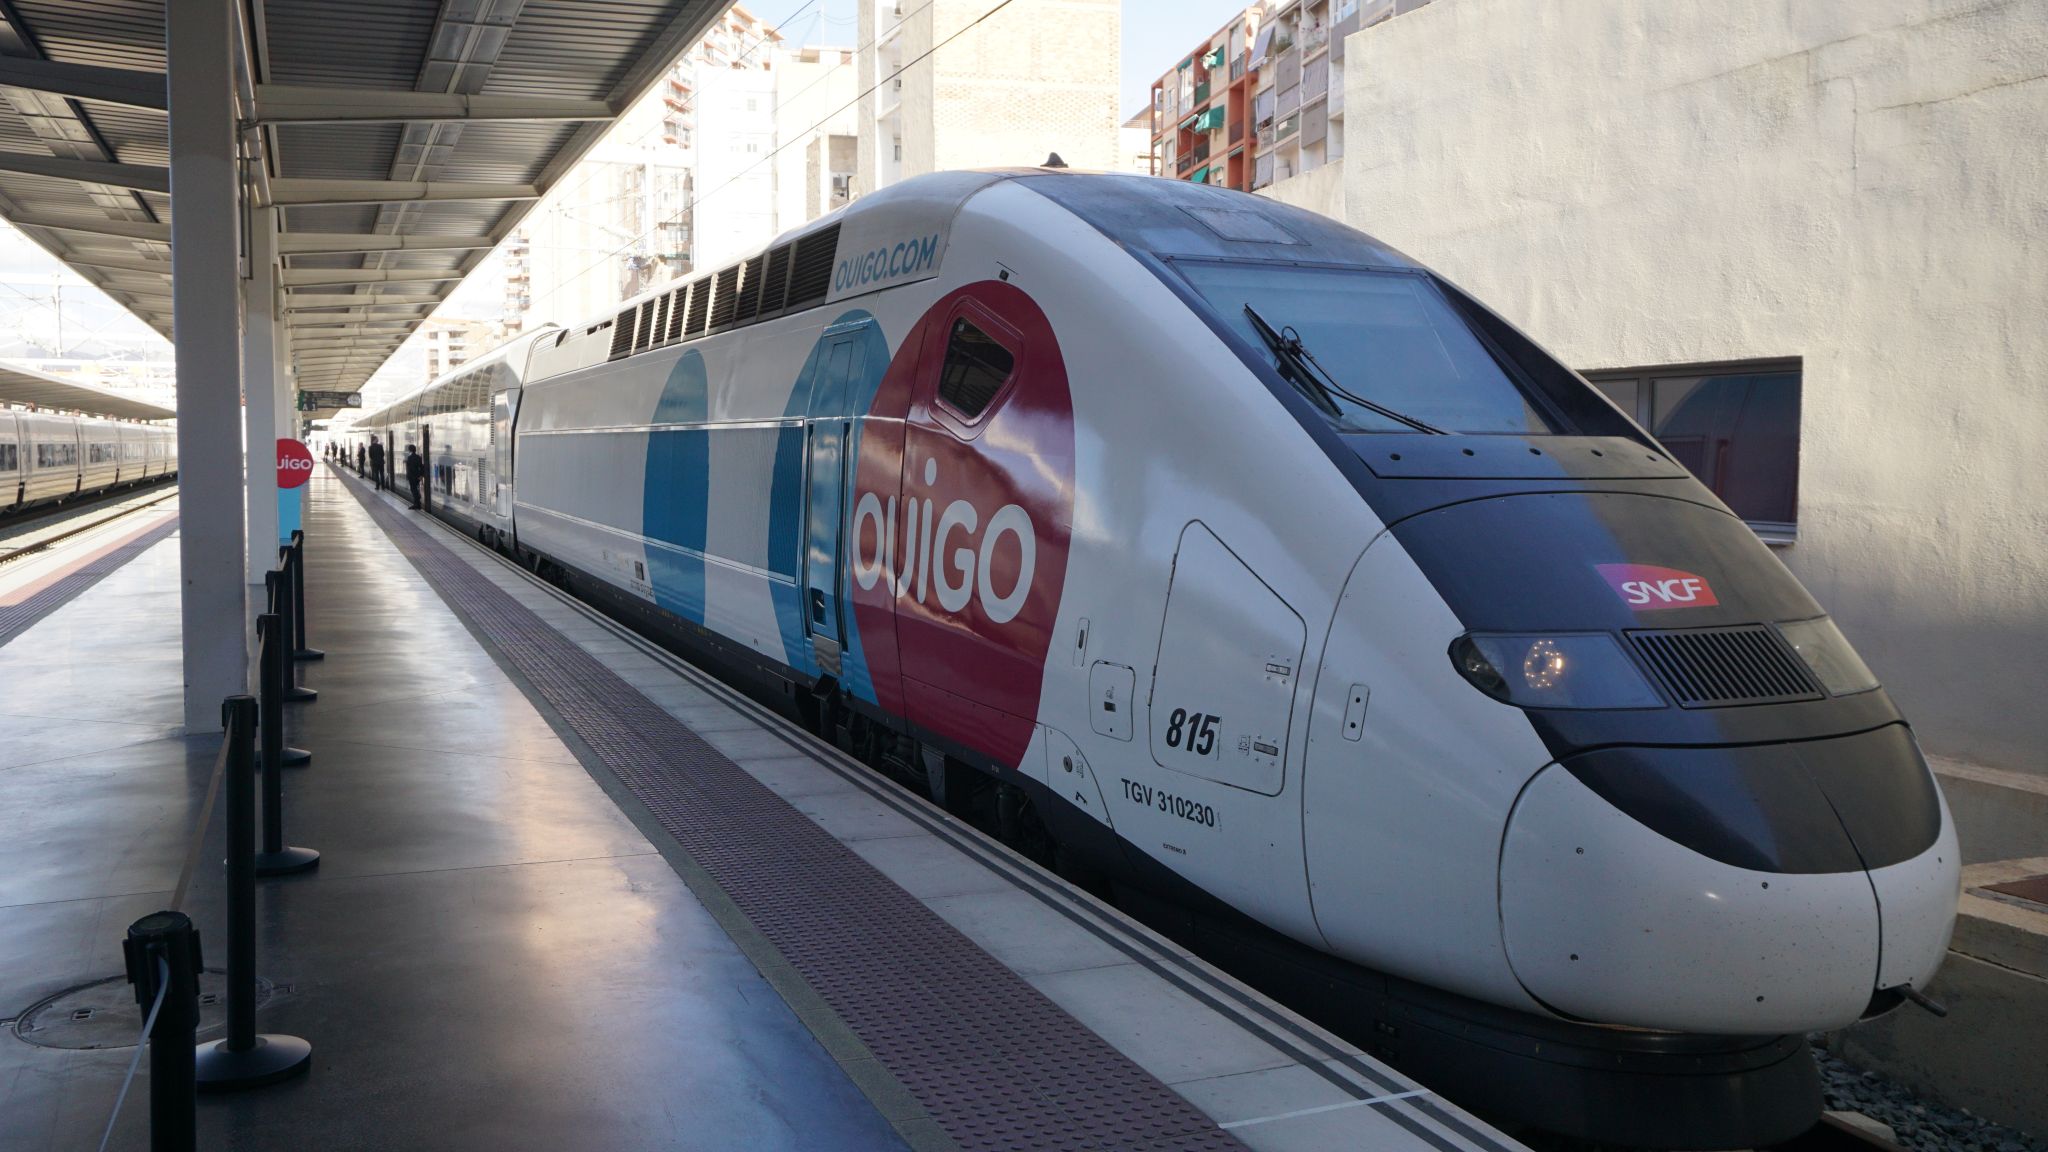 Ouigo train in Spain